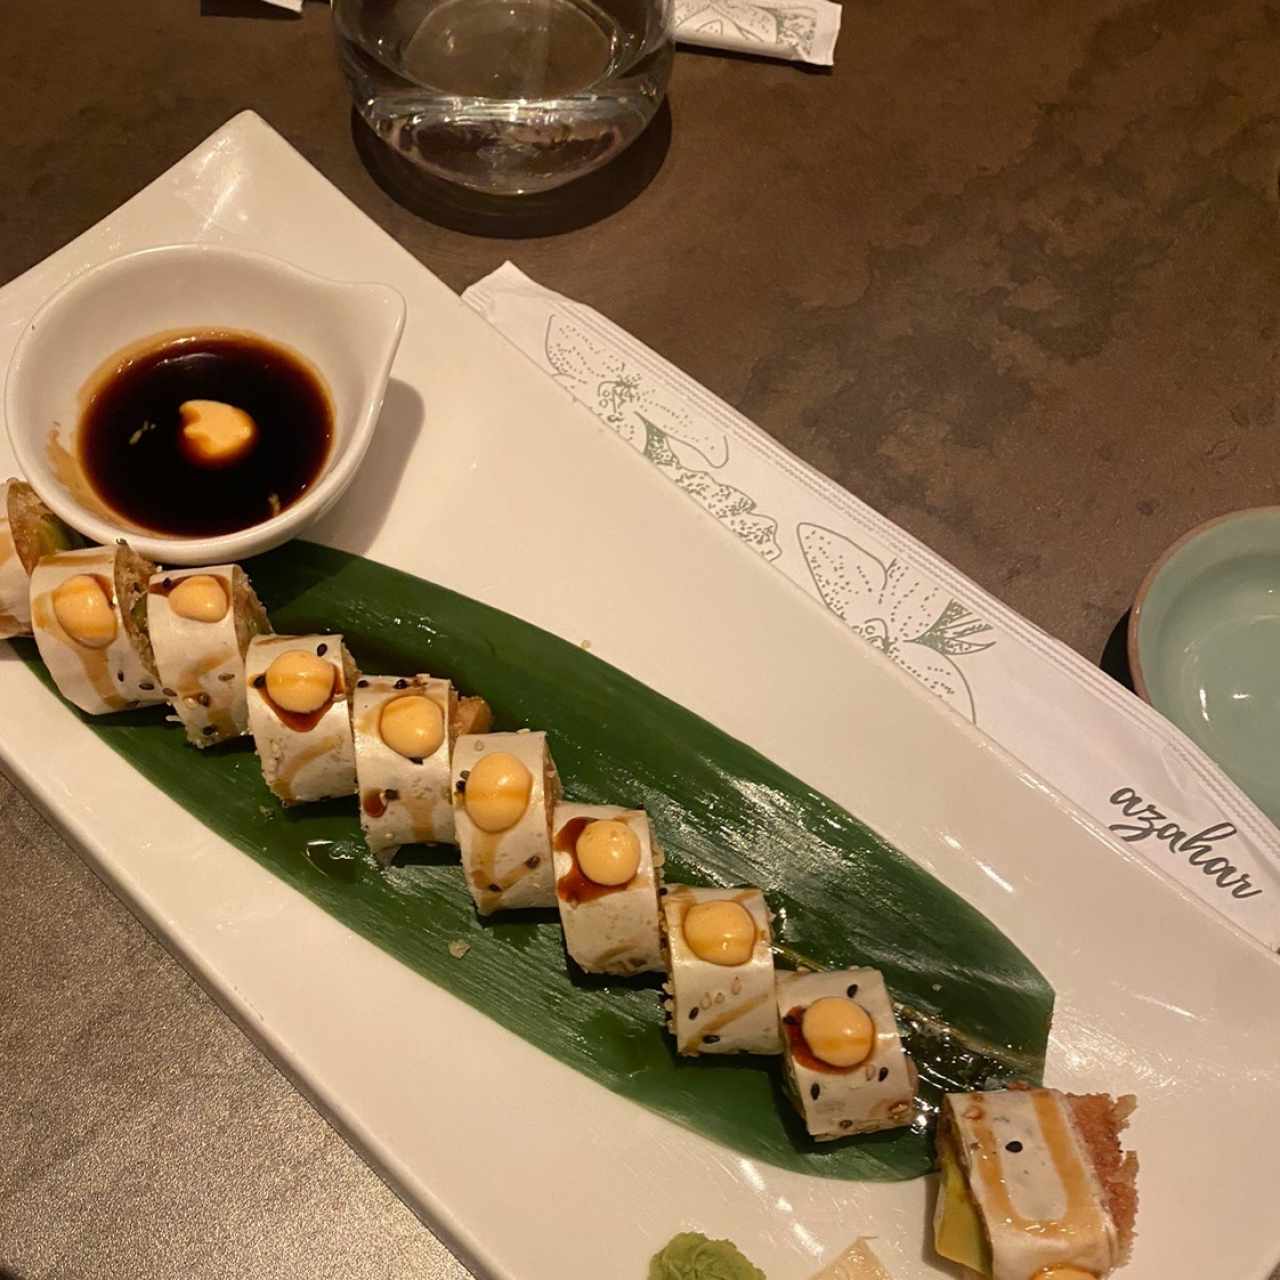 Sushi Rolls - Mr. Miyagi